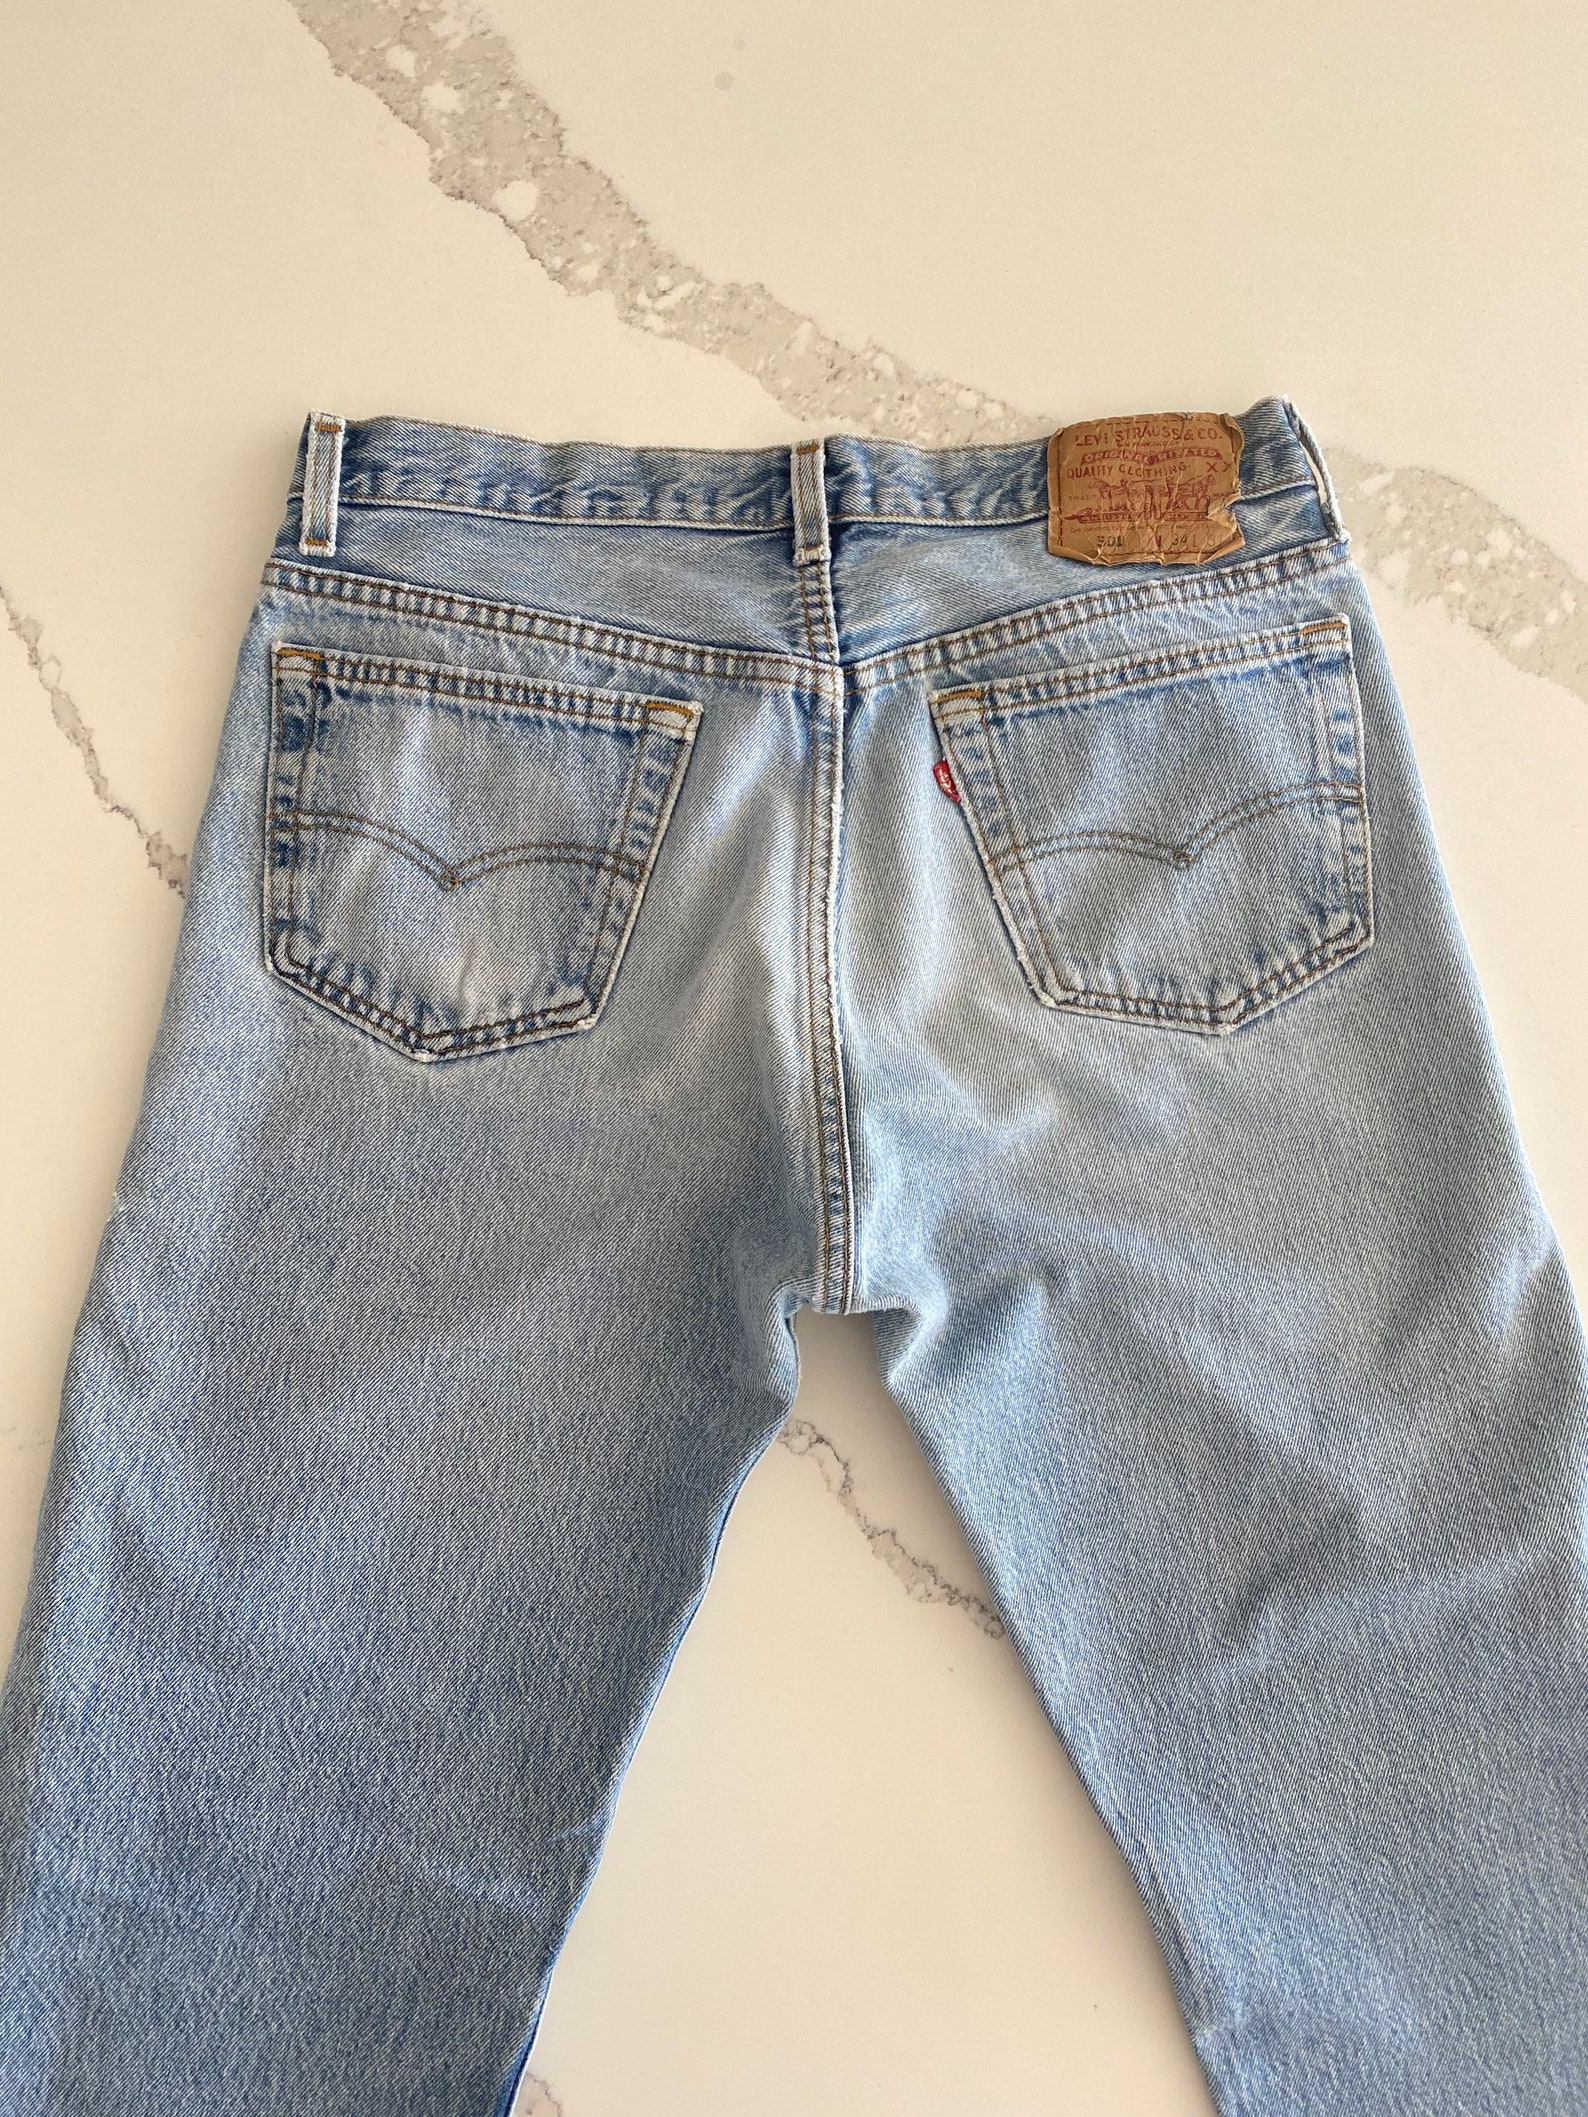 Vtg Levis 501 light wash jeans 30 | Etsy